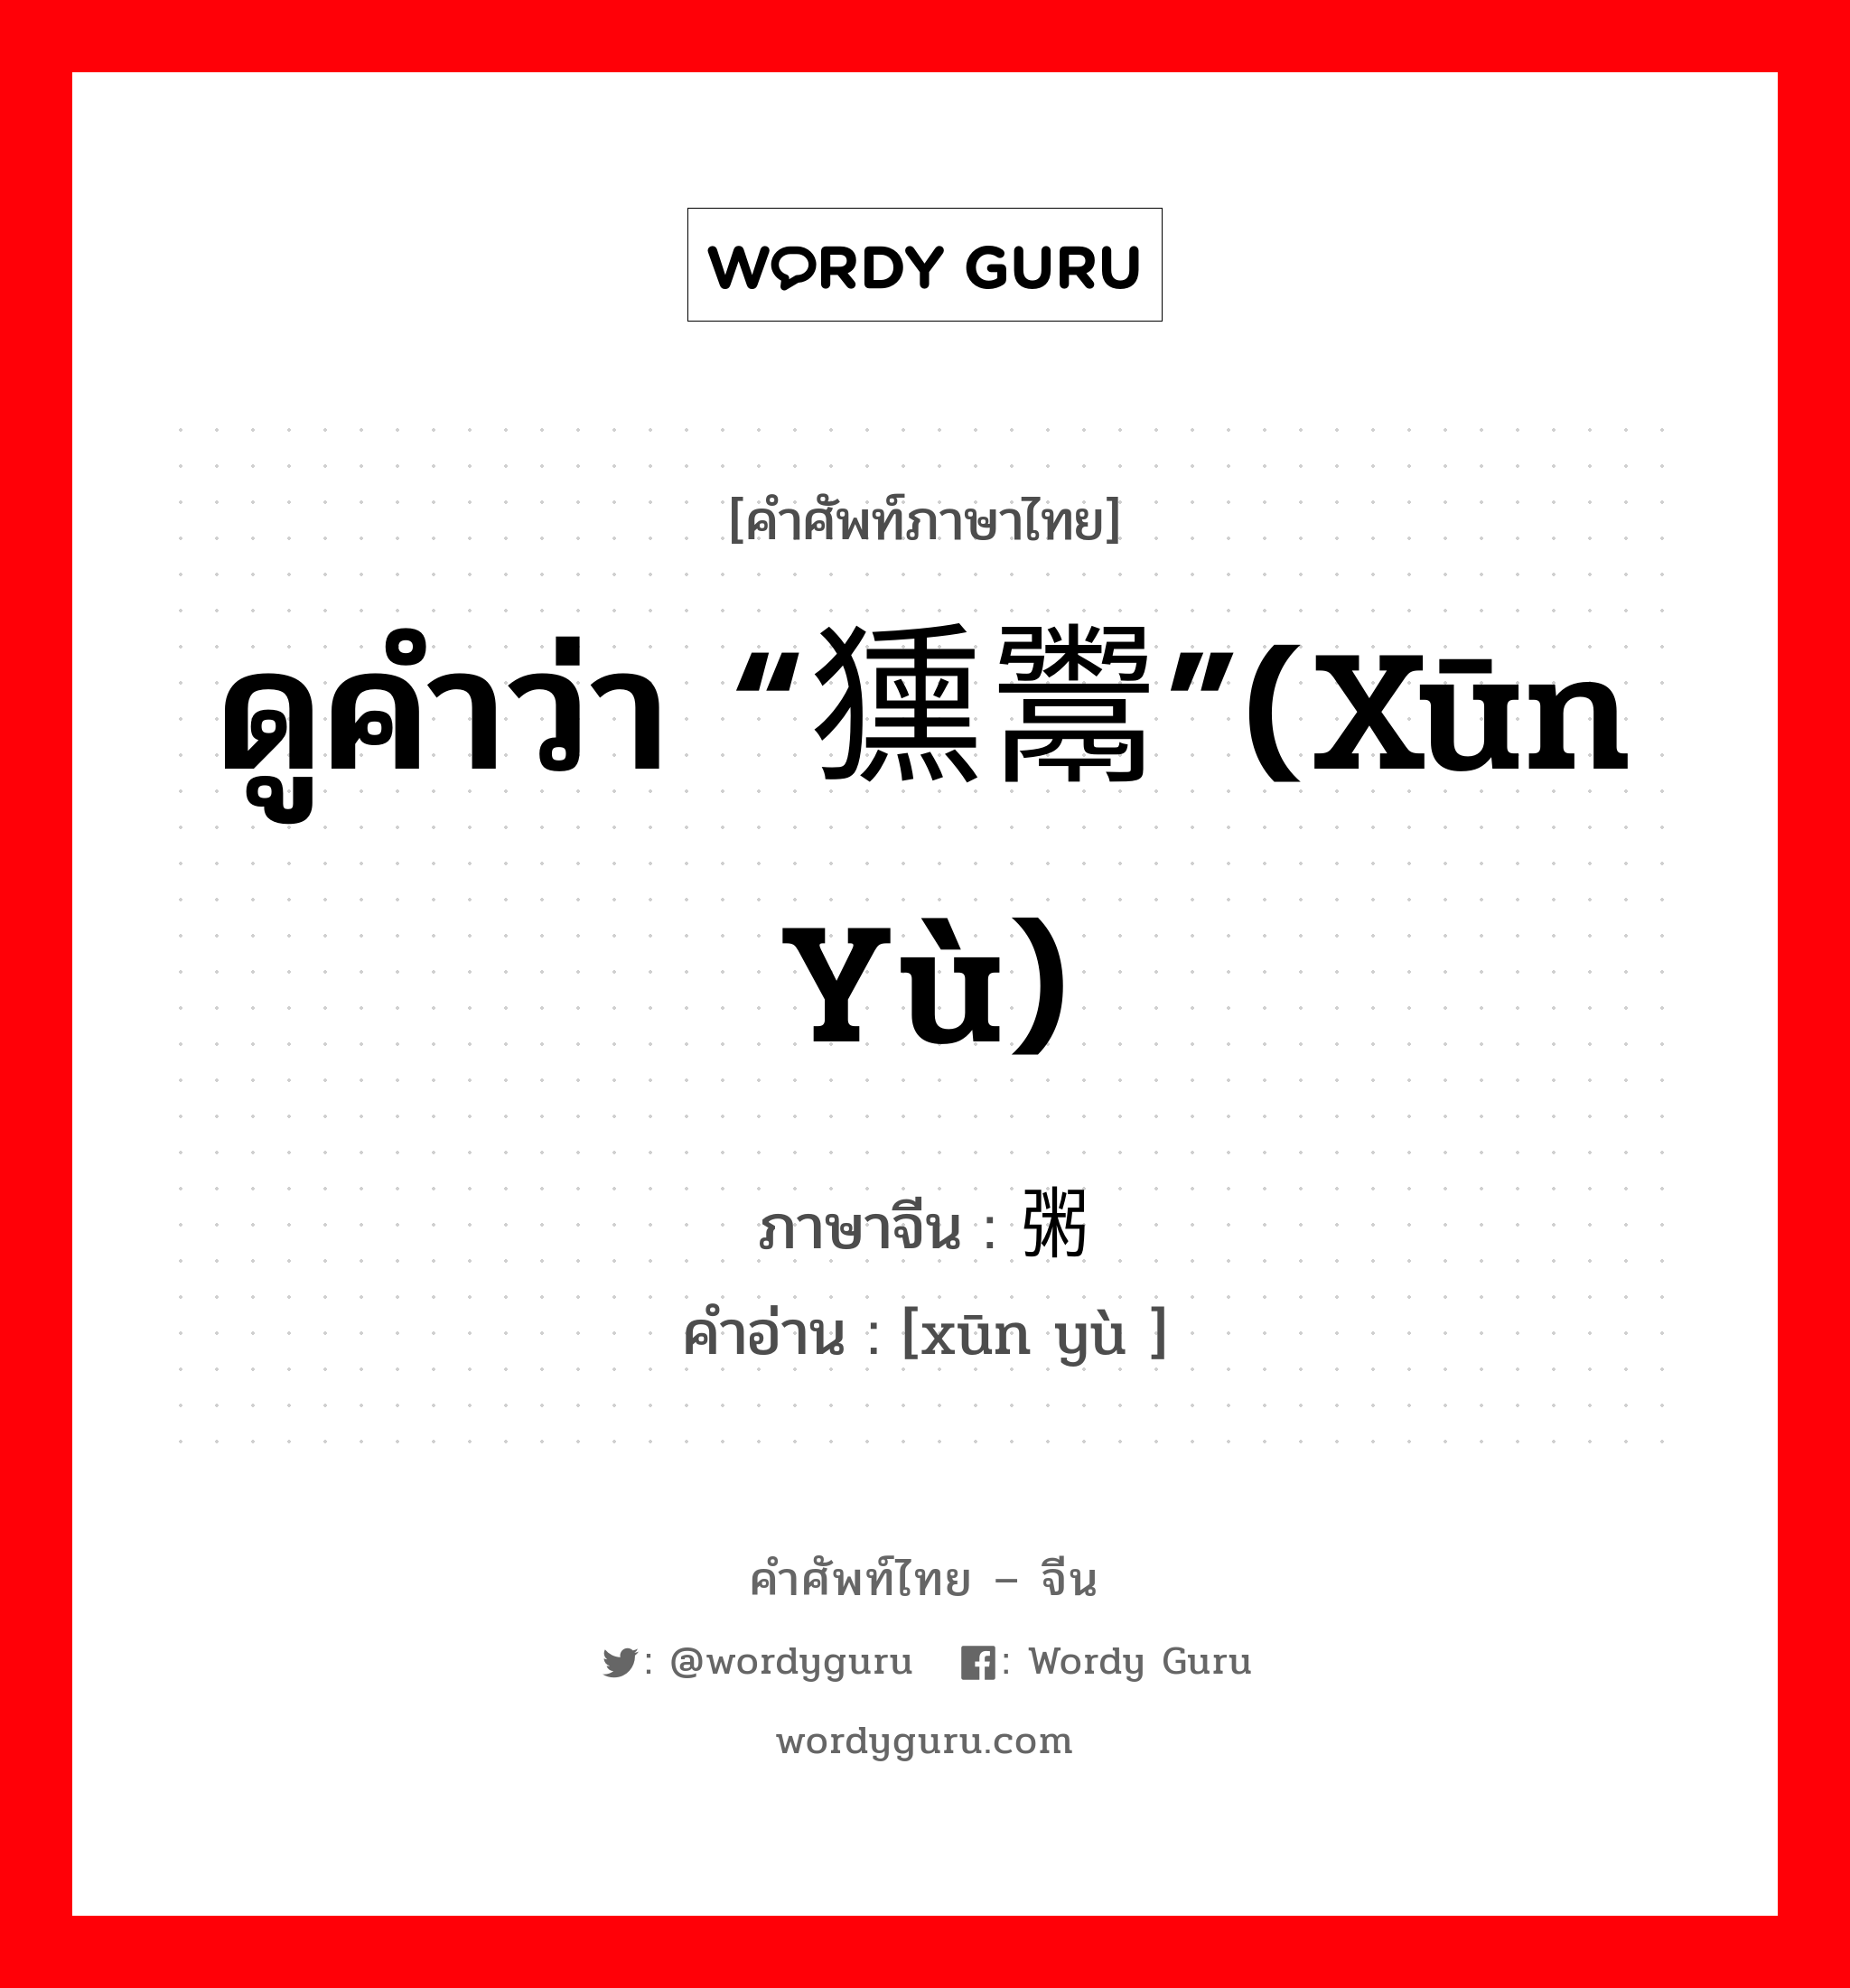 ดูคำว่า “獯鬻”(xūn yù) ภาษาจีนคืออะไร, คำศัพท์ภาษาไทย - จีน ดูคำว่า “獯鬻”(xūn yù) ภาษาจีน 荤粥 คำอ่าน [xūn yù ]